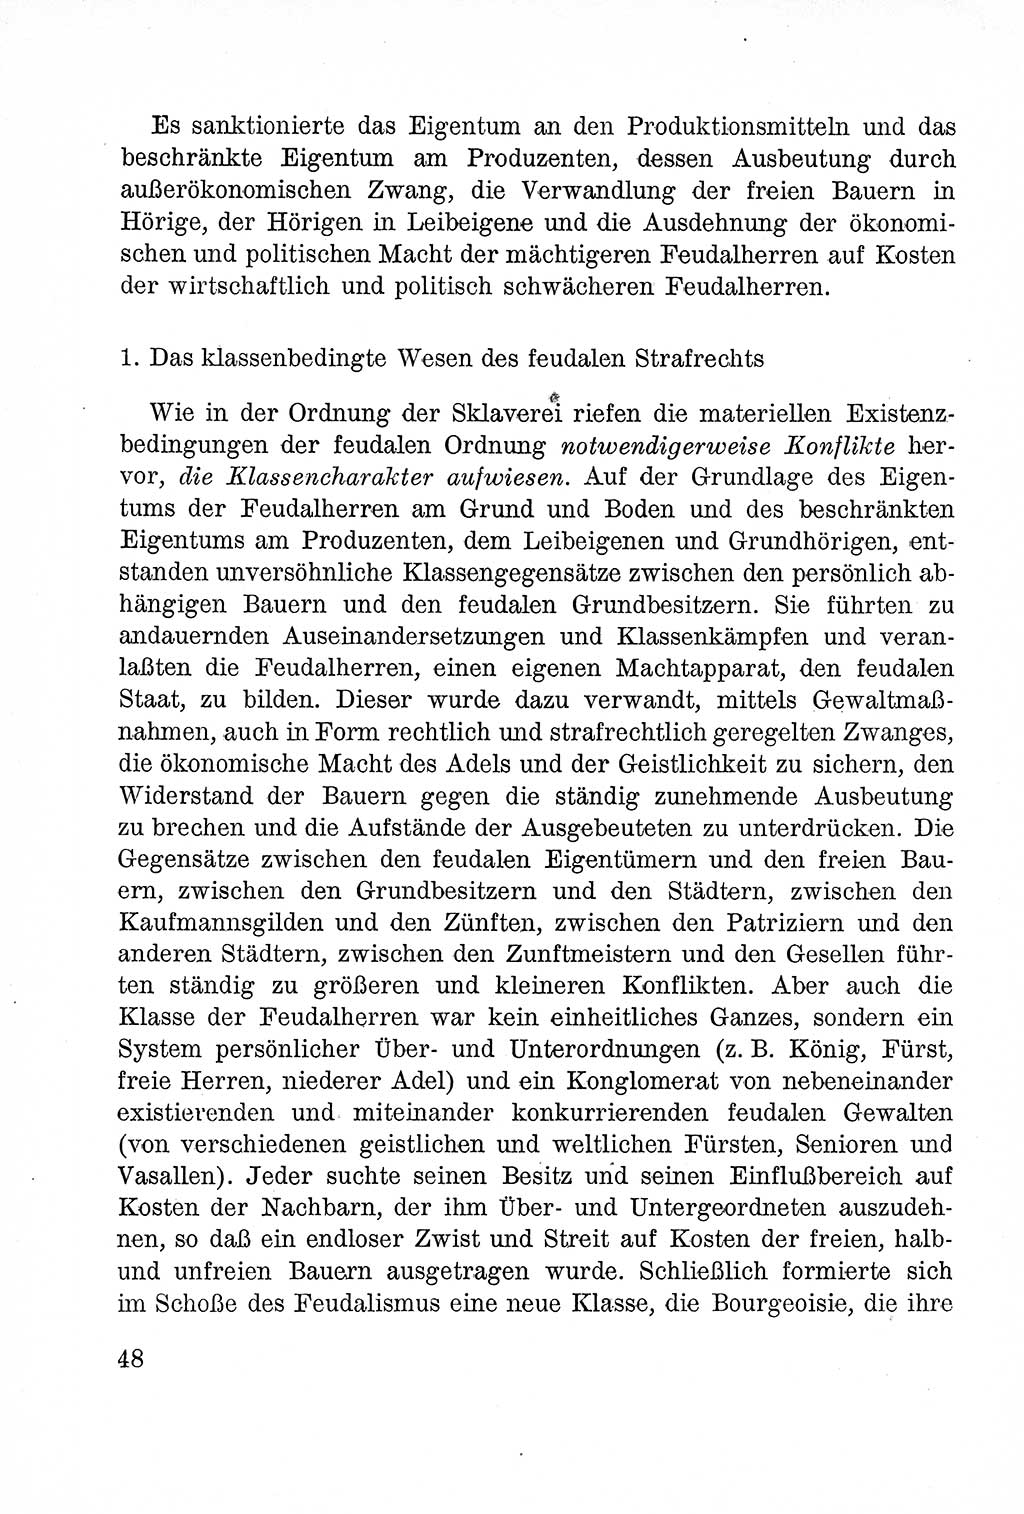 Lehrbuch des Strafrechts der Deutschen Demokratischen Republik (DDR), Allgemeiner Teil 1957, Seite 48 (Lb. Strafr. DDR AT 1957, S. 48)